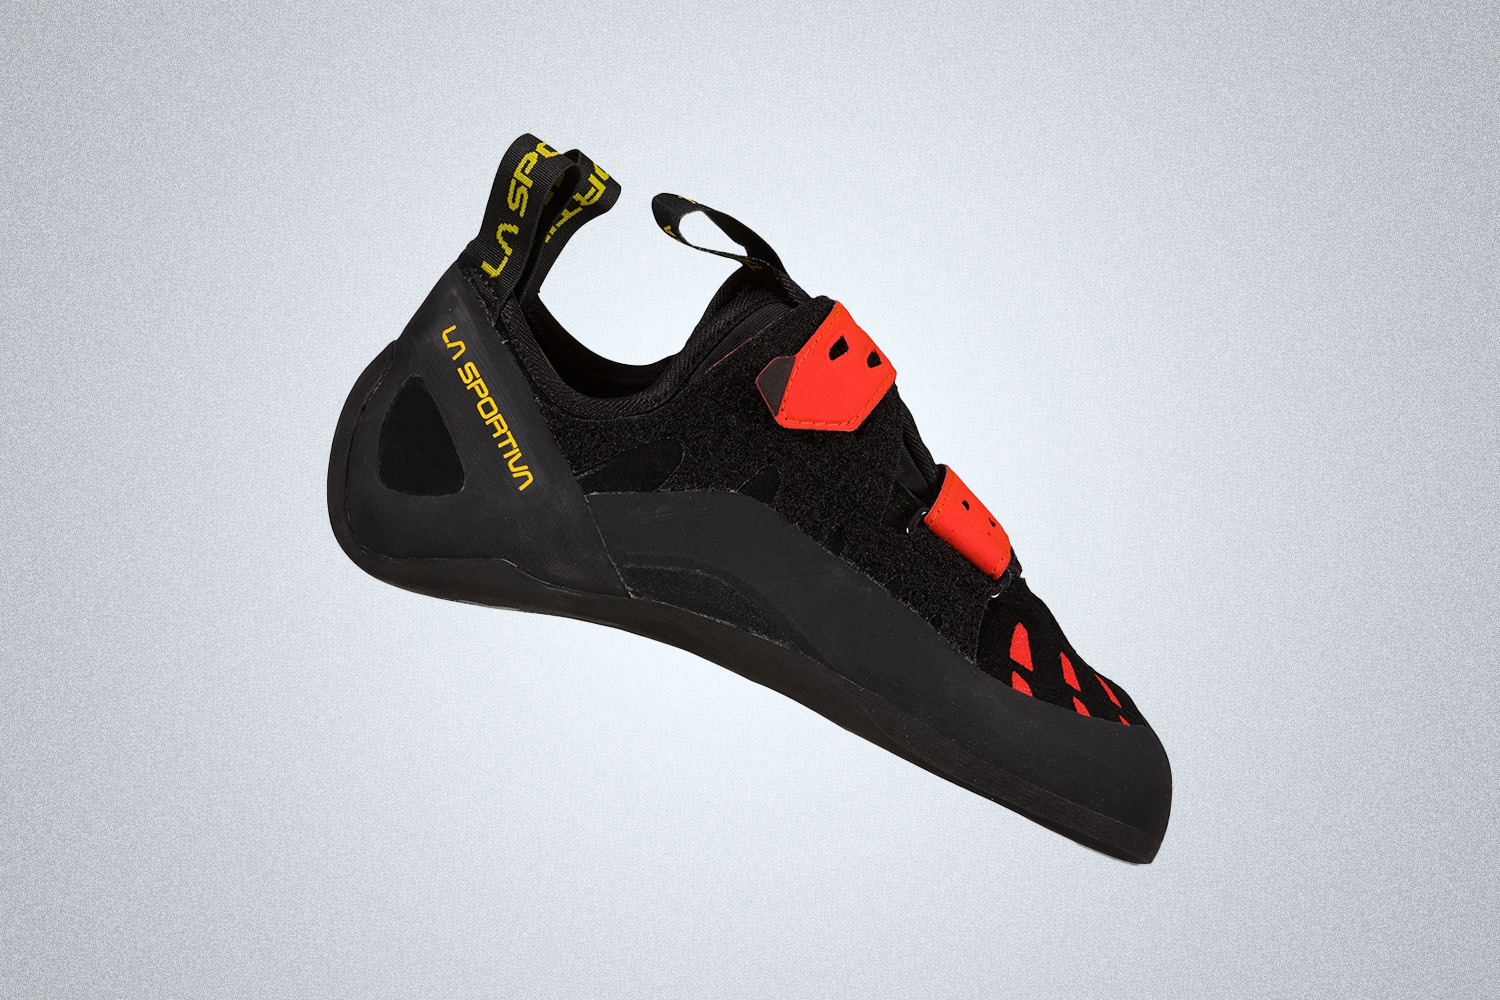 Το La Sportiva Tarantula είναι το καλύτερο παπούτσι αναρρίχησης για αρχάριους το 2022